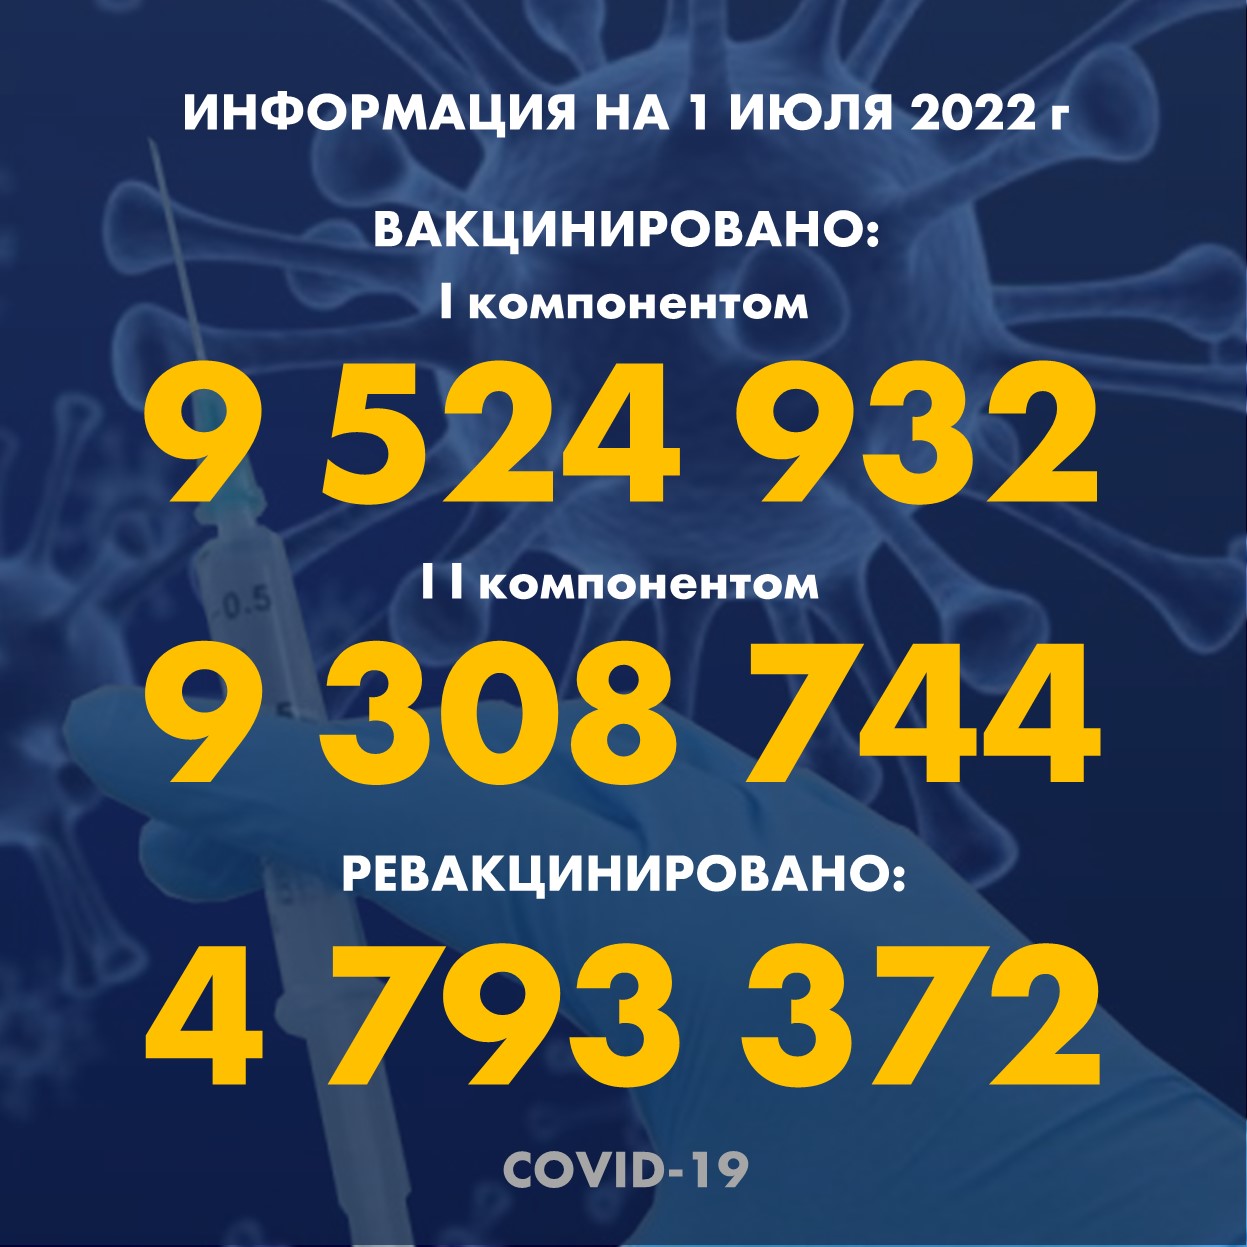 I компонентом 9 524 932 человек провакцинировано в Казахстане на 1.07.2022 г, II компонентом 9 308 744 человек. Ревакцинировано – 4 793 372